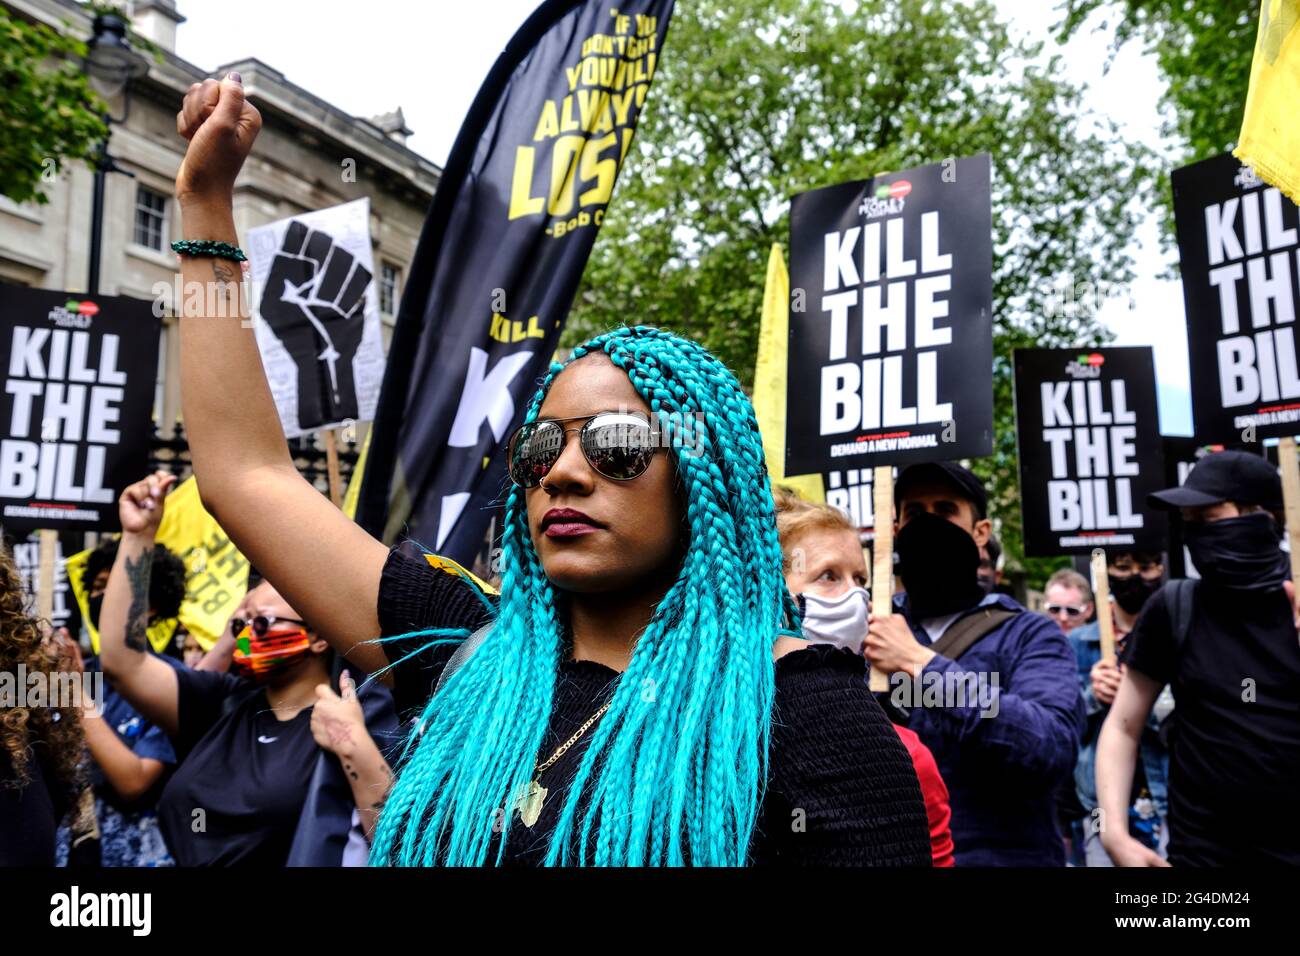 Chantelle LUNT, fondatore di Merseyside BLM Alliance, Black Lives Matter protestando lungo Side Kill la dimostrazione di Bill. guidato dal ramo britannico di United for Black Lives combattendo specificamente contro l'uso del potere della polizia come mezzo per silenziare le voci nere, in risposta alle recenti uccisioni di neri da parte della polizia. Foto Stock